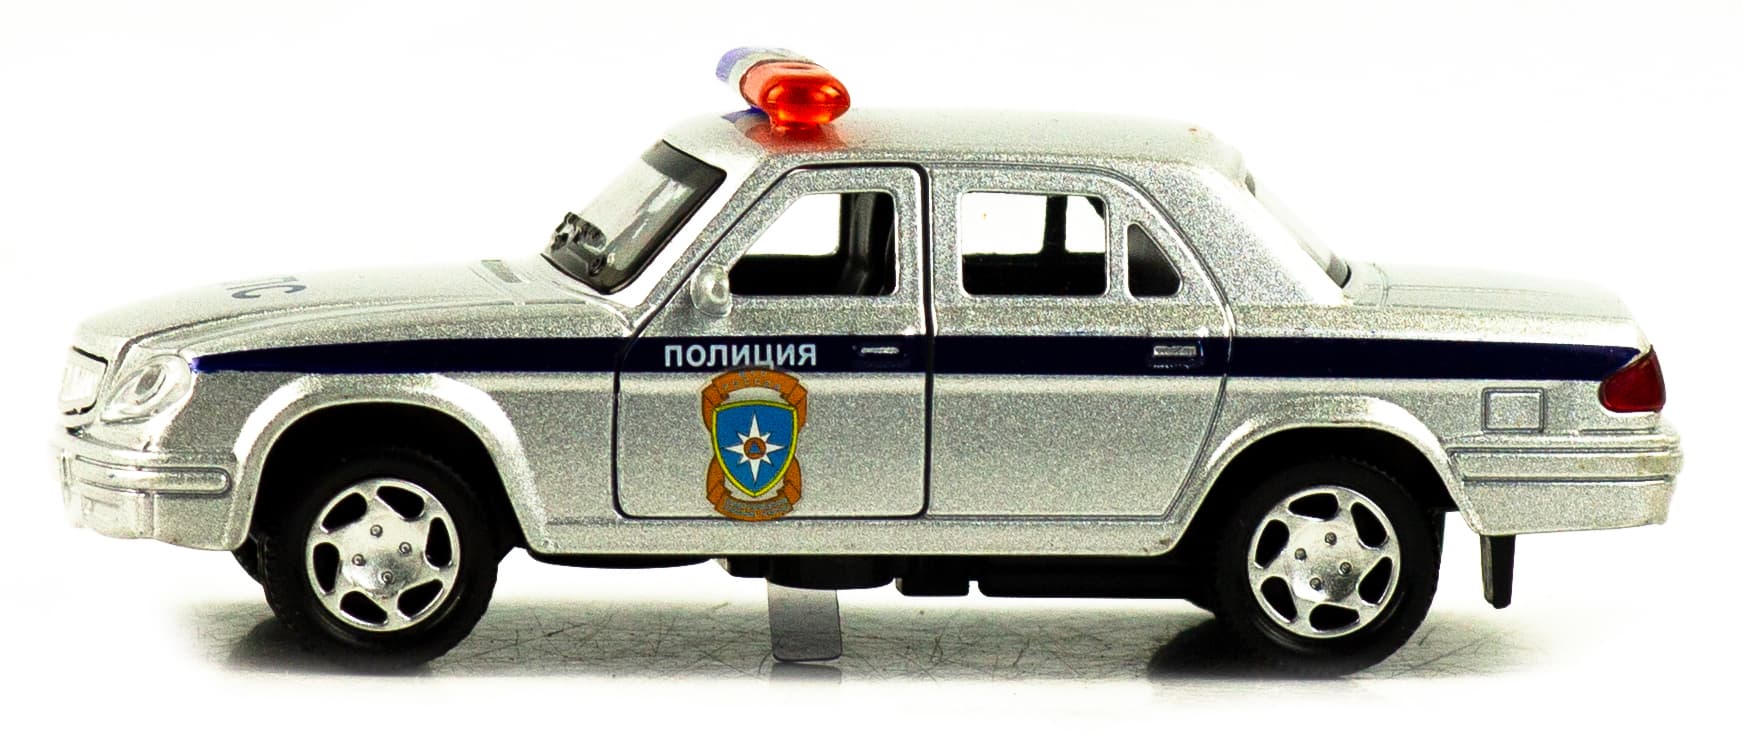 Машинка металлическая 1:32 «31105 Волга: Полиция» 1821P-1822P-12D, инерционная, свет, звук / Серебристый